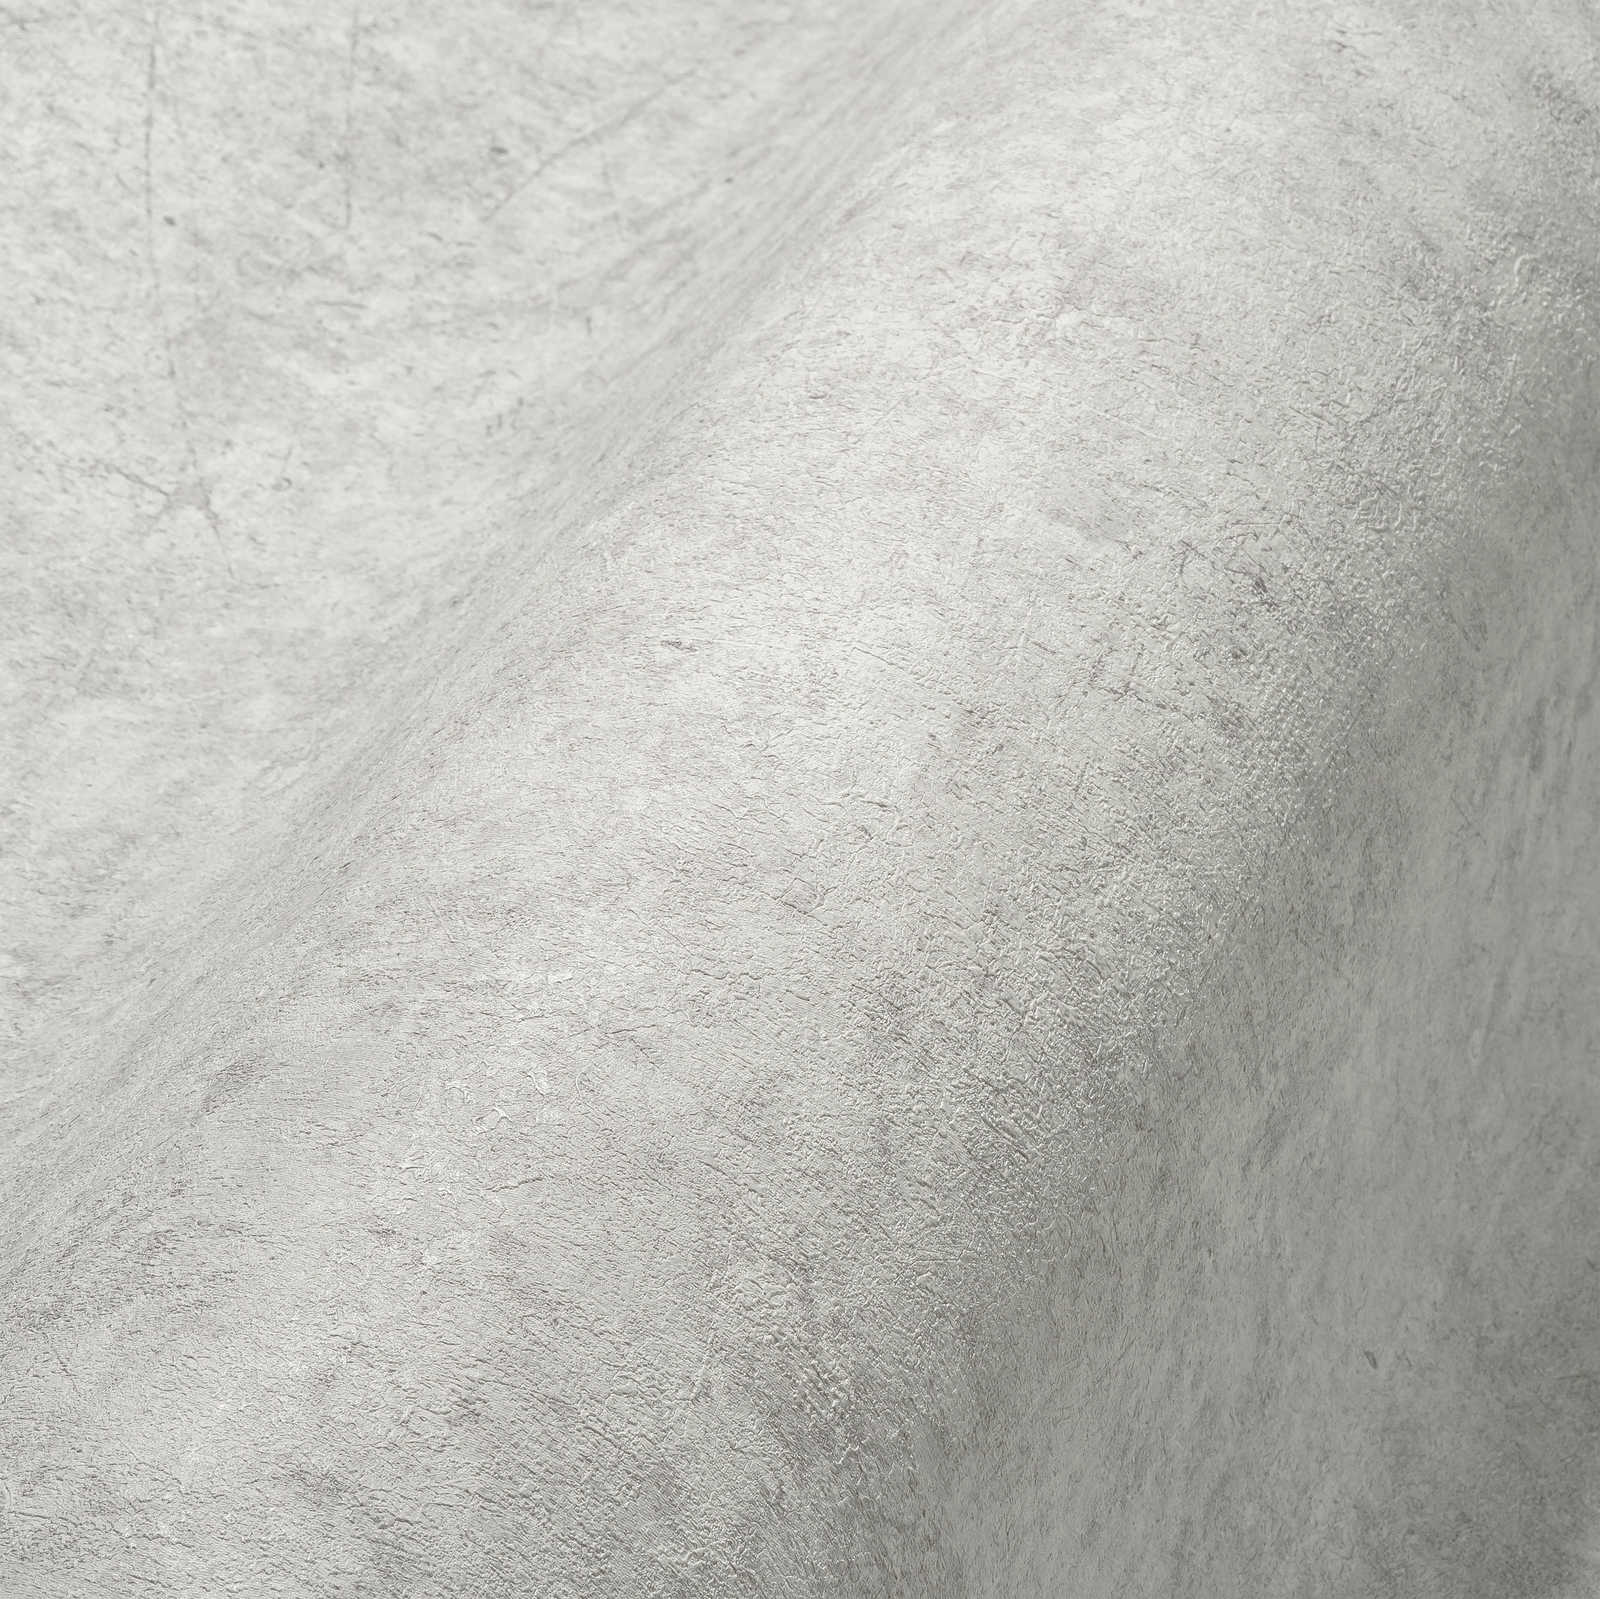             Carta da parati in tessuto non tessuto effetto cemento a tinta unita - grigio
        